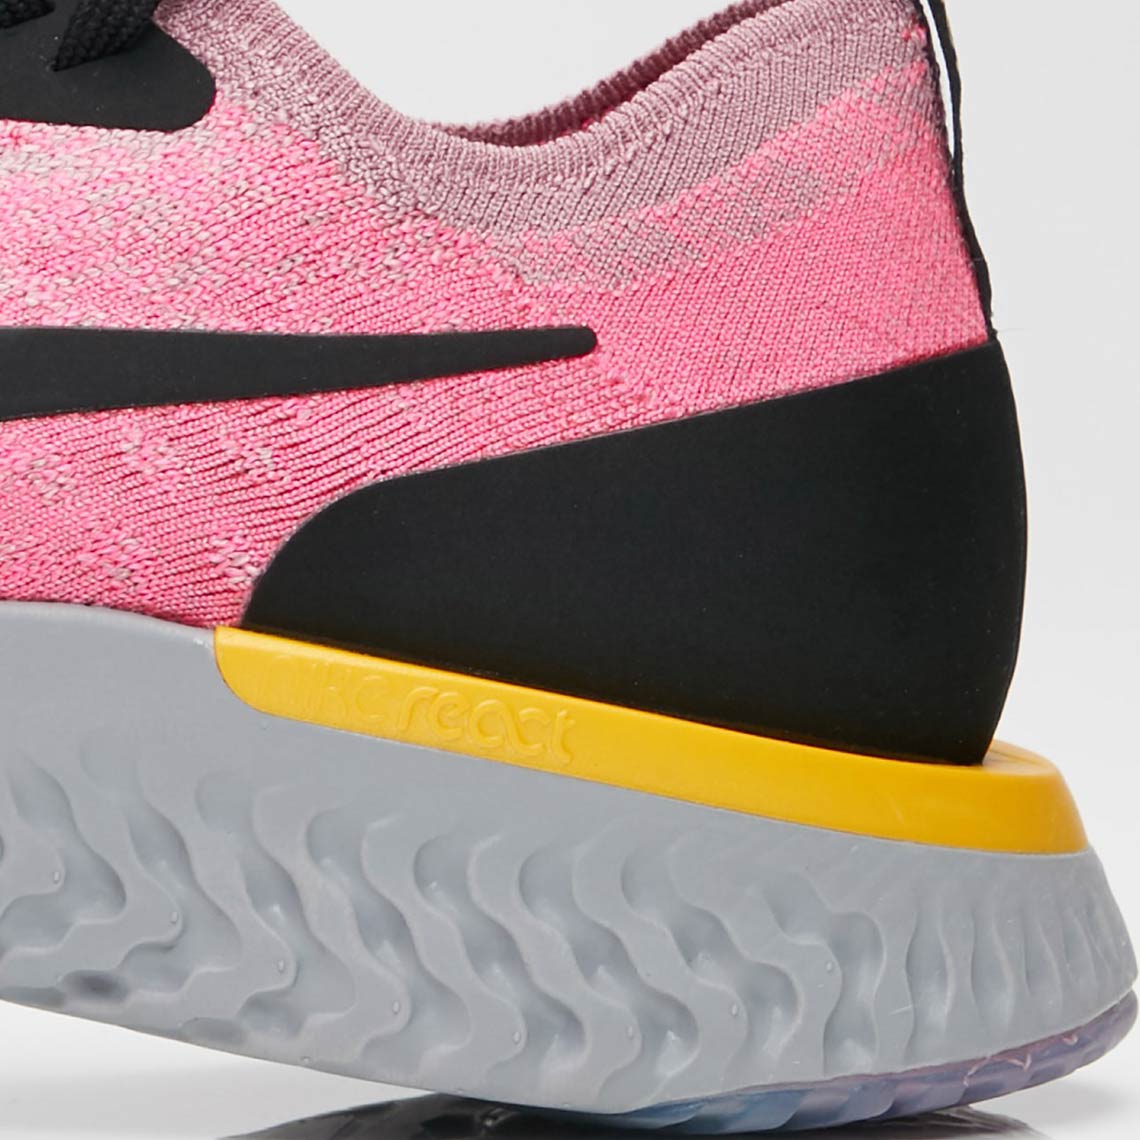 Nike Epic React Pink Black Yellow Aq0067 500 7